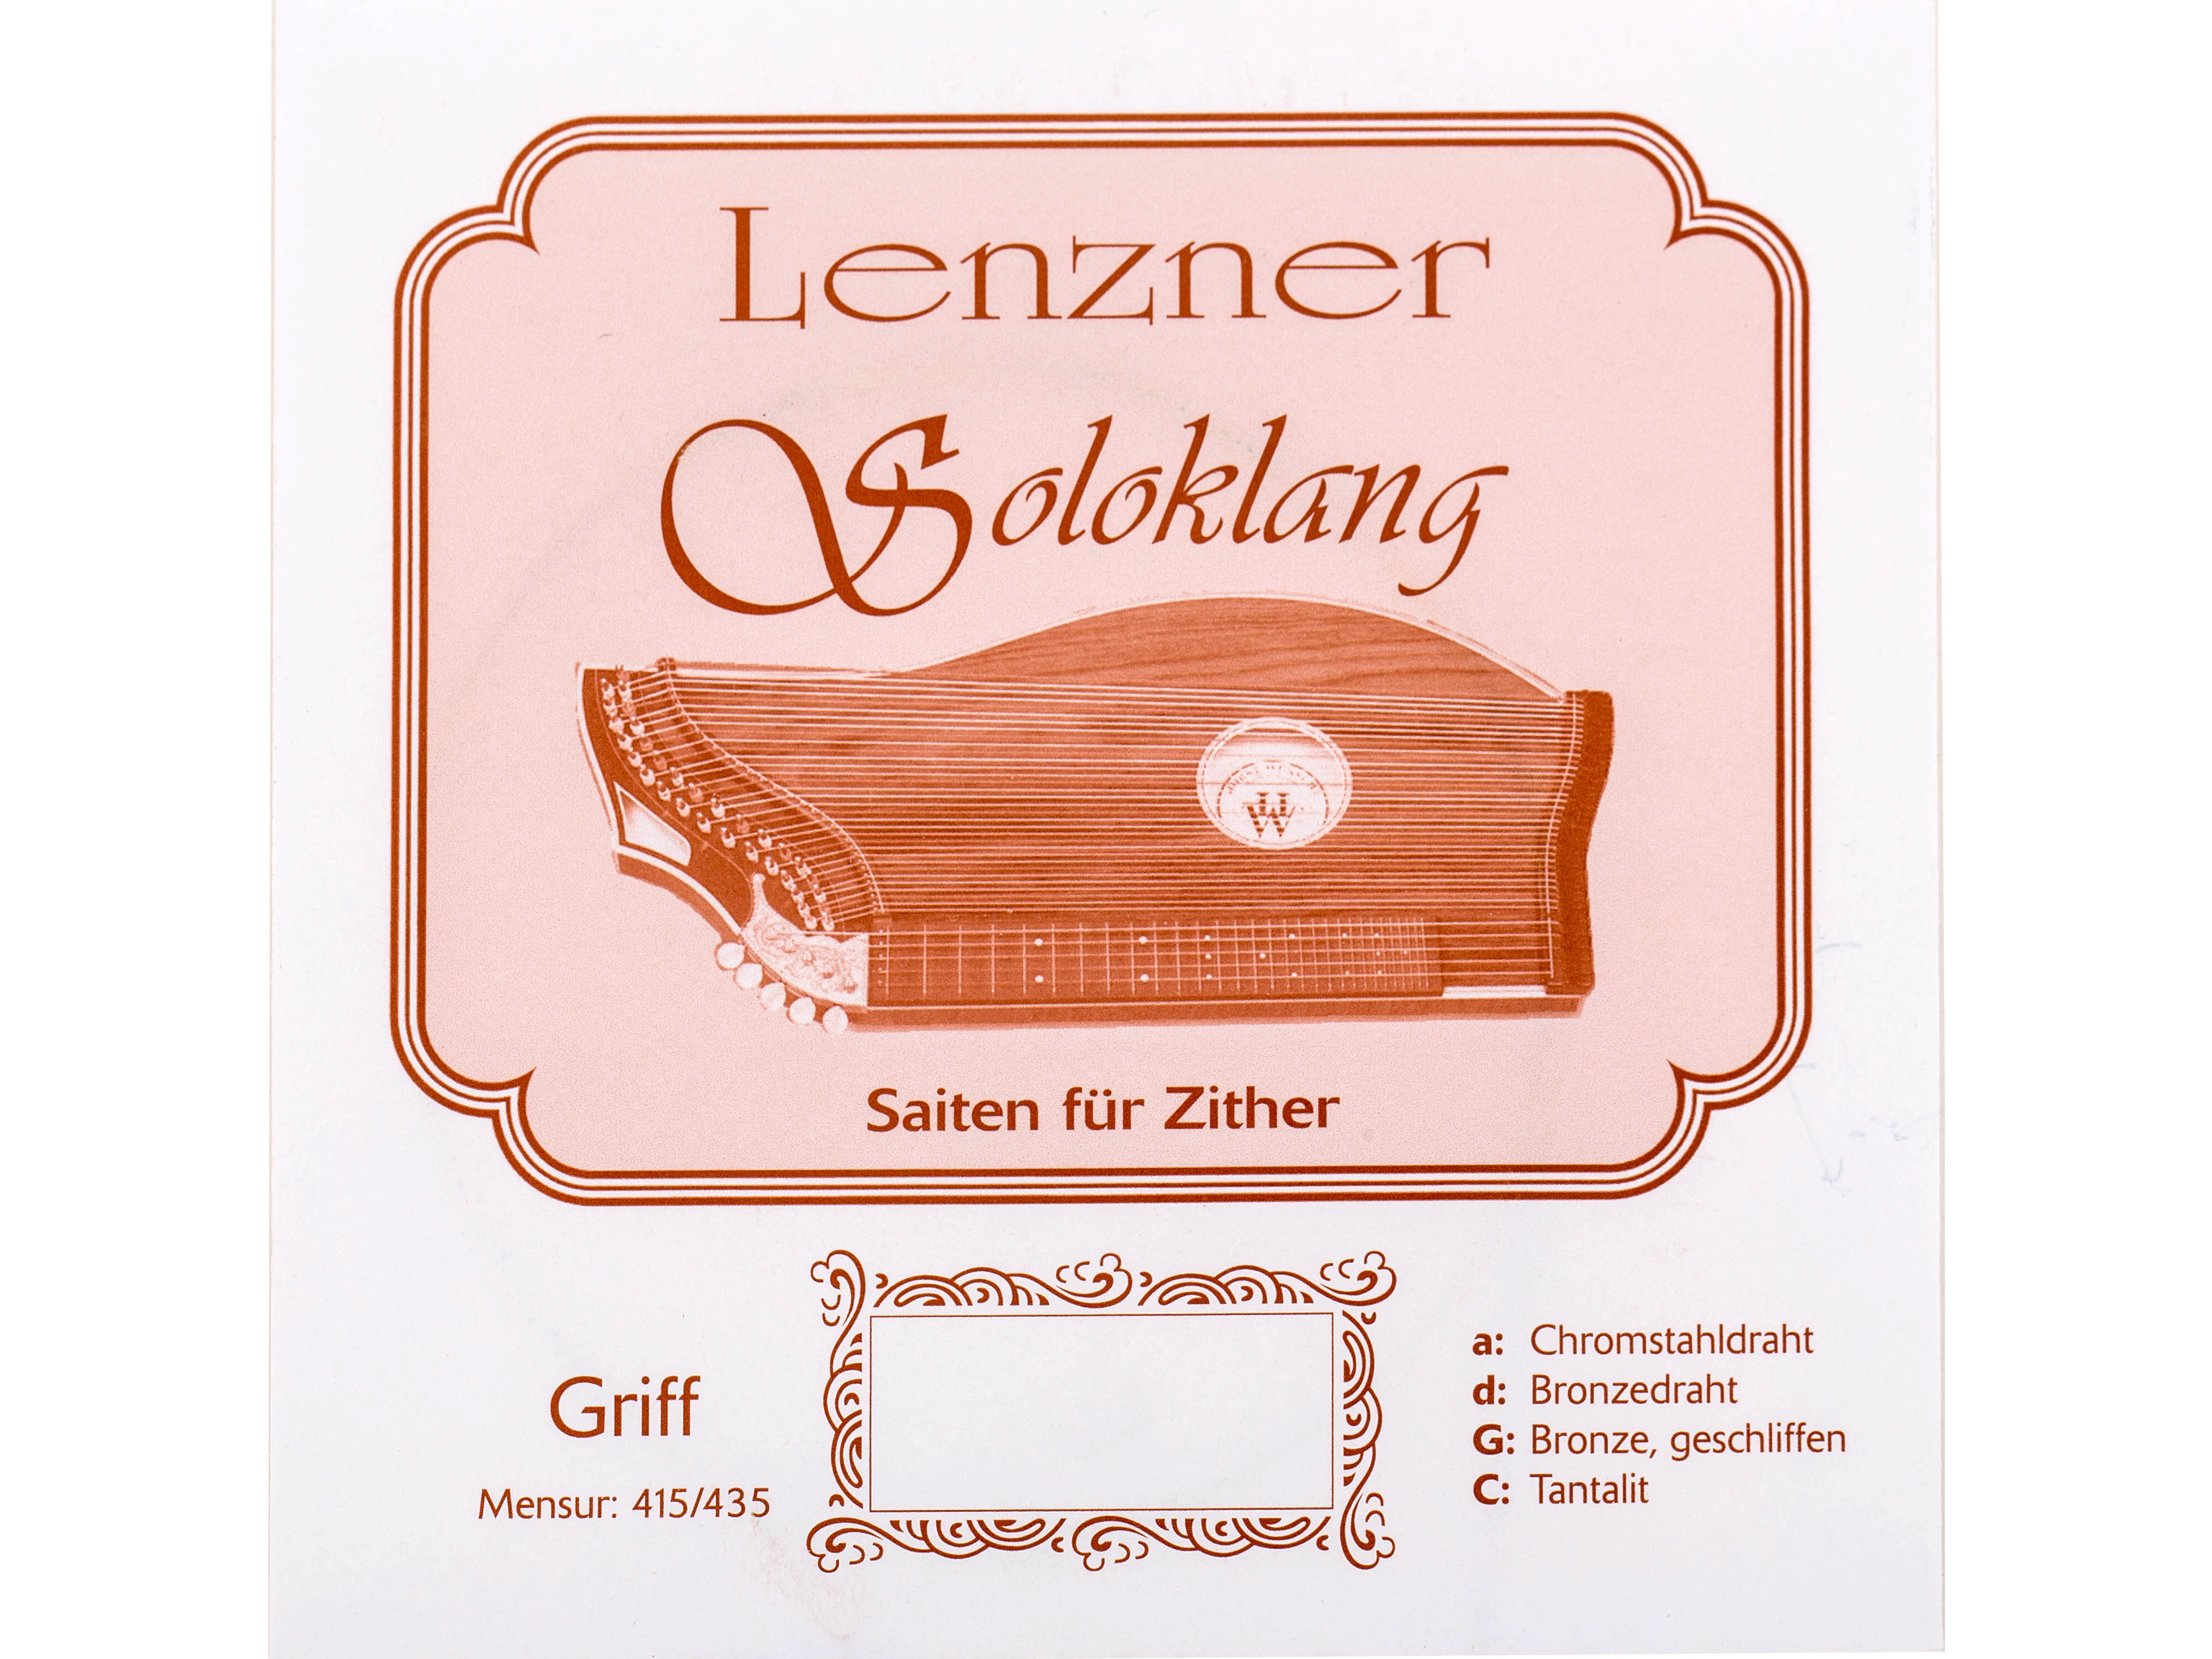 Lenzner 5512 d Zithersaite Soloklang Griffbrett